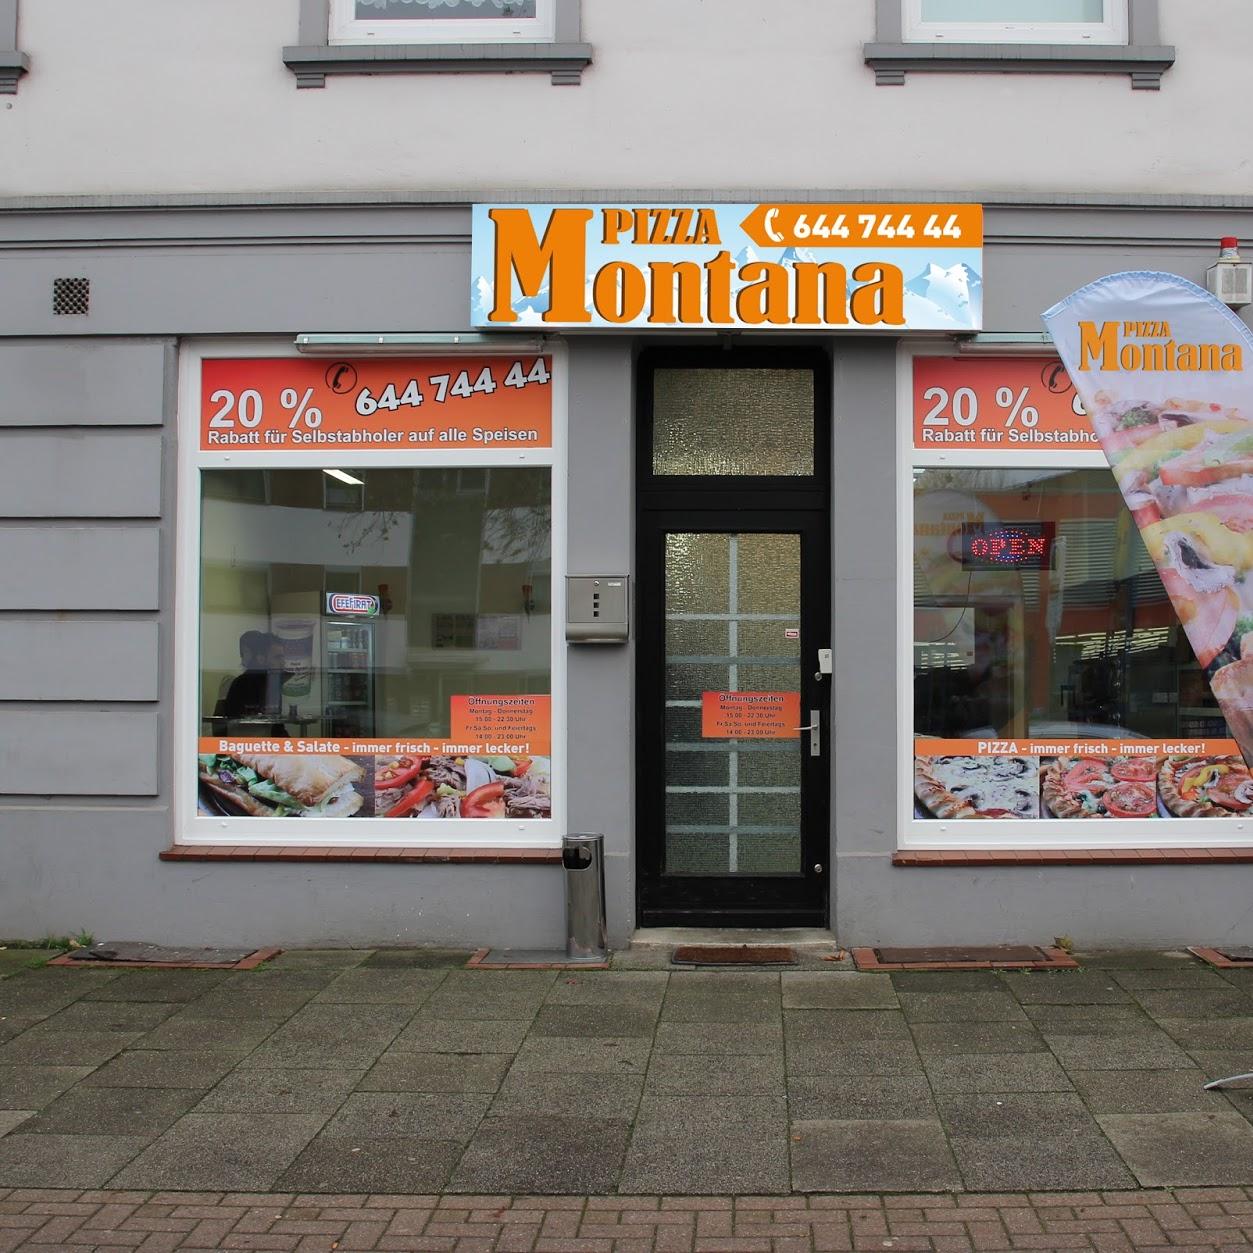 Restaurant "Pizza Montana" in Bremen